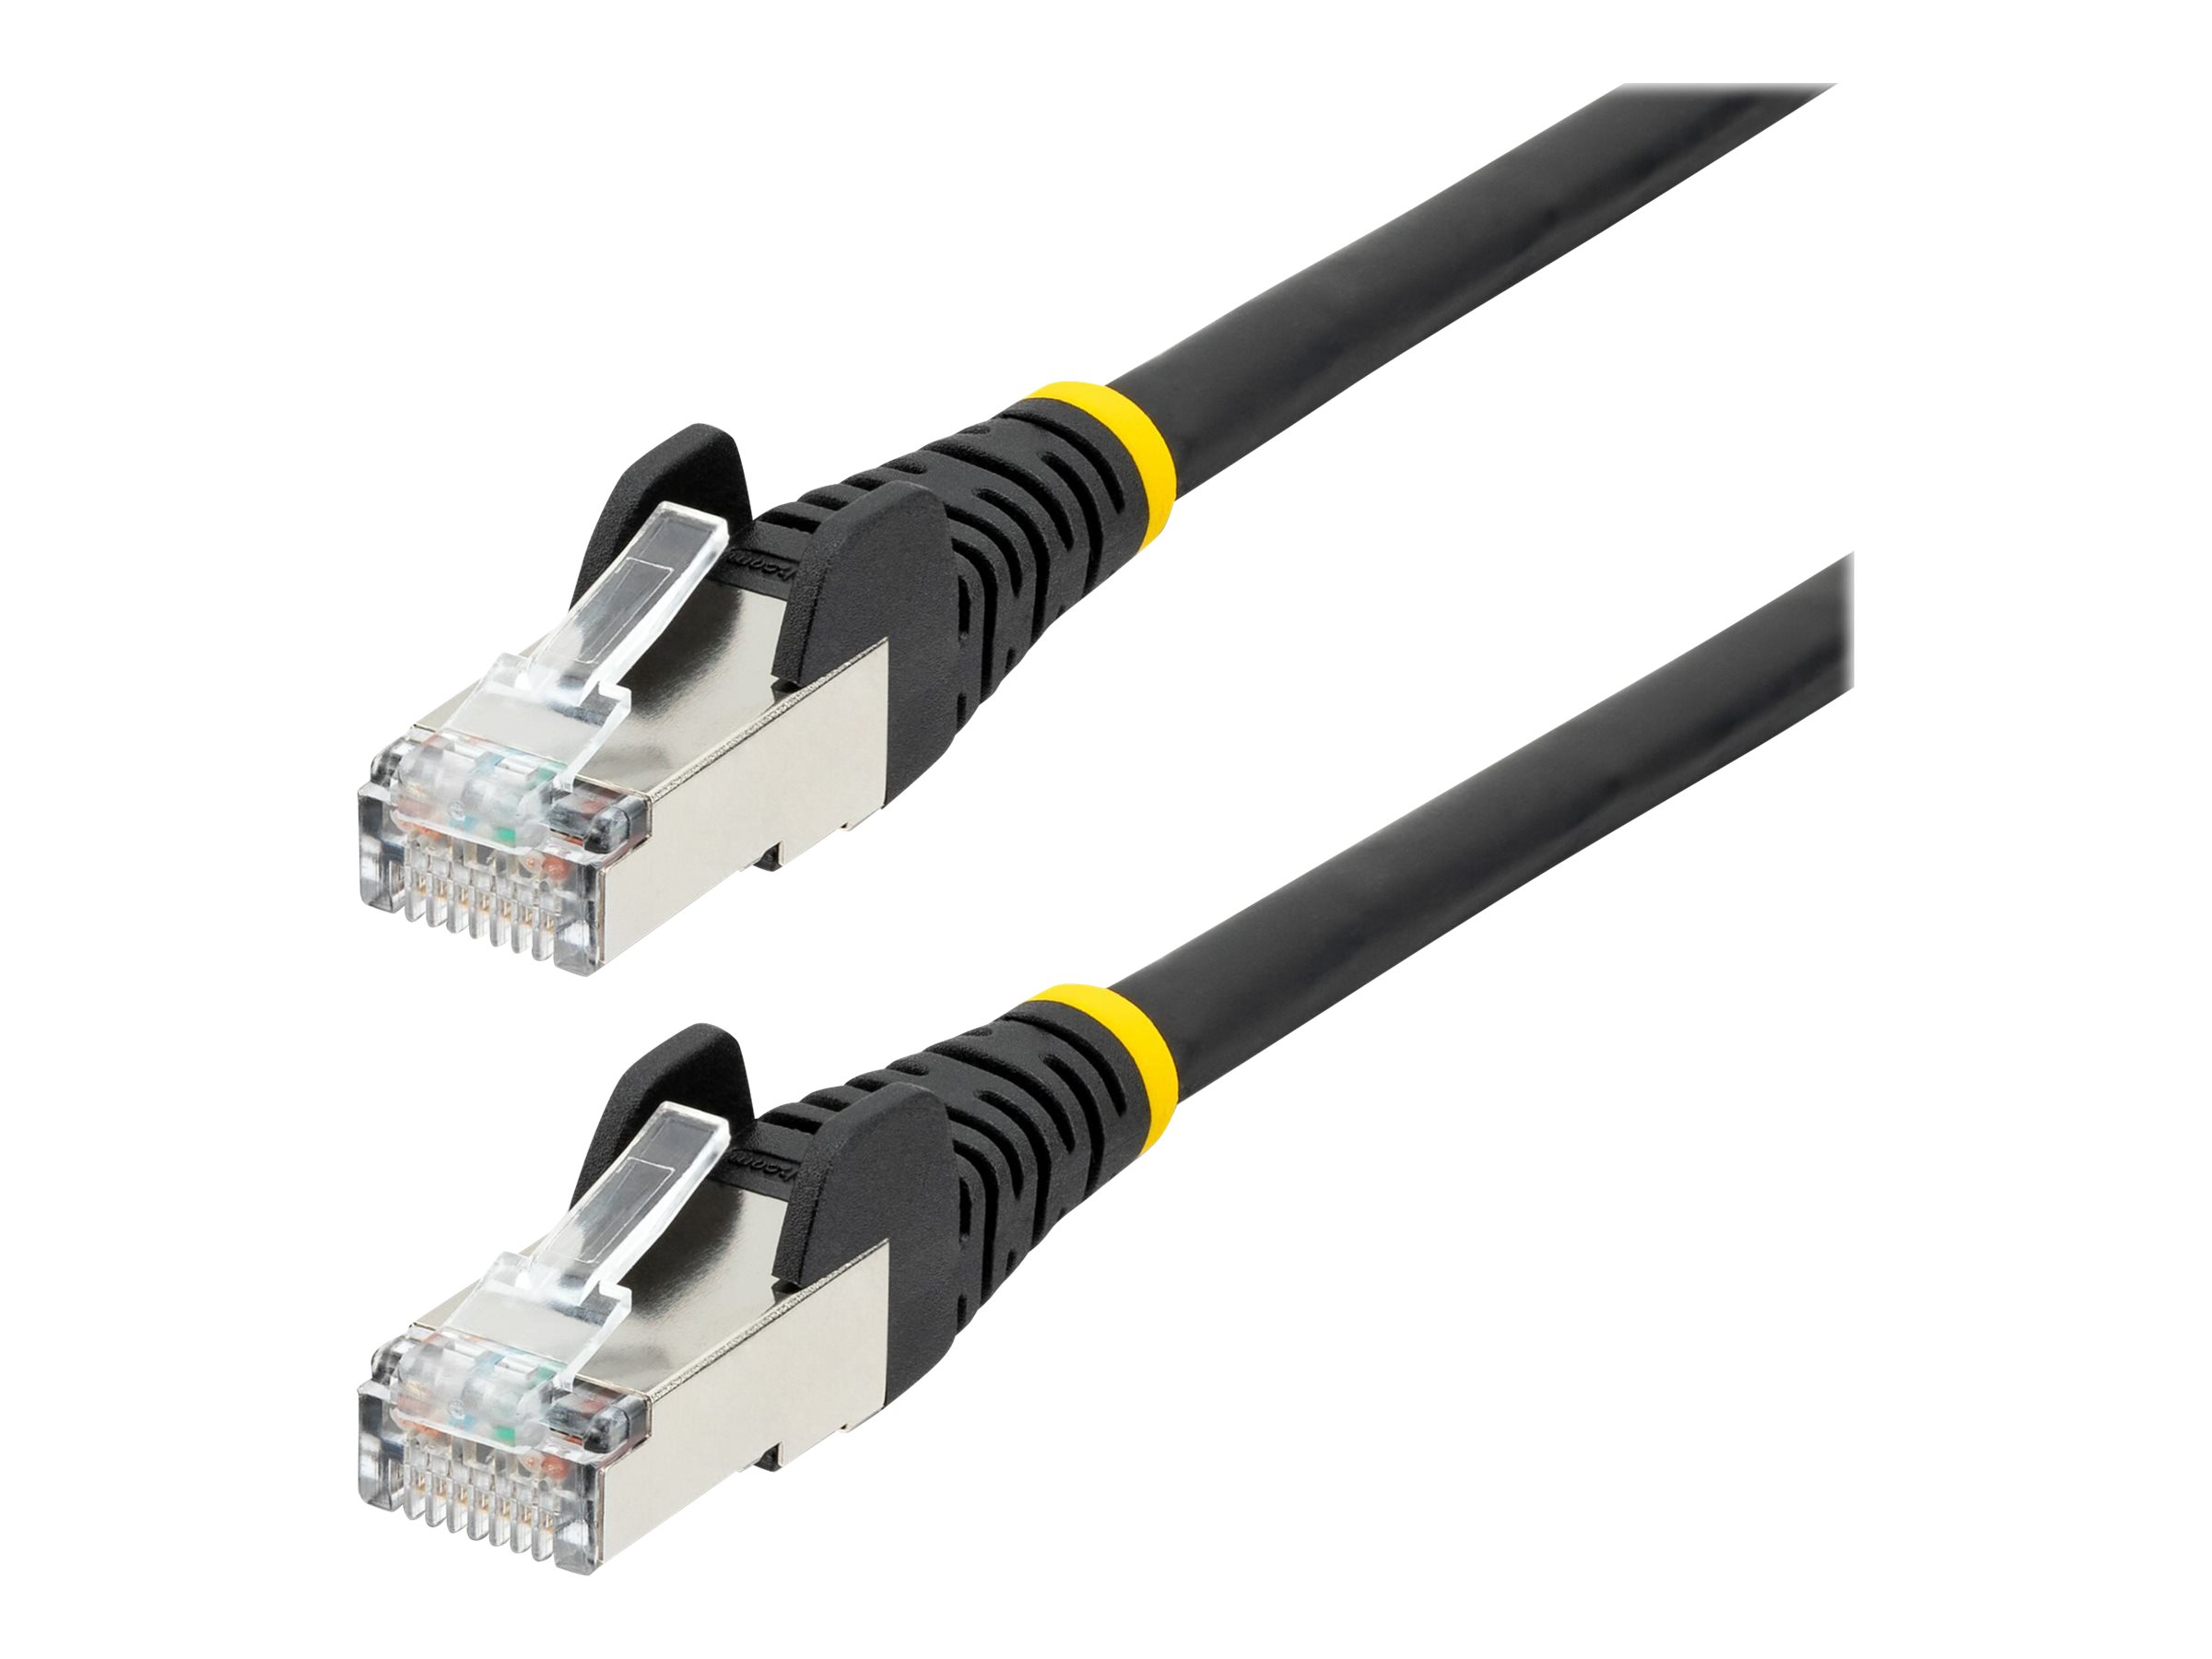 StarTech.com 5m CAT6a Ethernet Cable - Black - Low Smoke Zero Halogen (LSZH) - 10GbE 500MHz 100W PoE++ Snagless RJ-45 w/Strain Reliefs S/FTP Network Patch Cord - Cordon de raccordement - RJ-45 (M) pour RJ-45 (M) - 5 m - S/FTP - CAT 6a - IEEE 802.3bt - sans halogène, moulé, sans crochet, bloqué - noir - NLBK-5M-CAT6A-PATCH - Câbles à paire torsadée